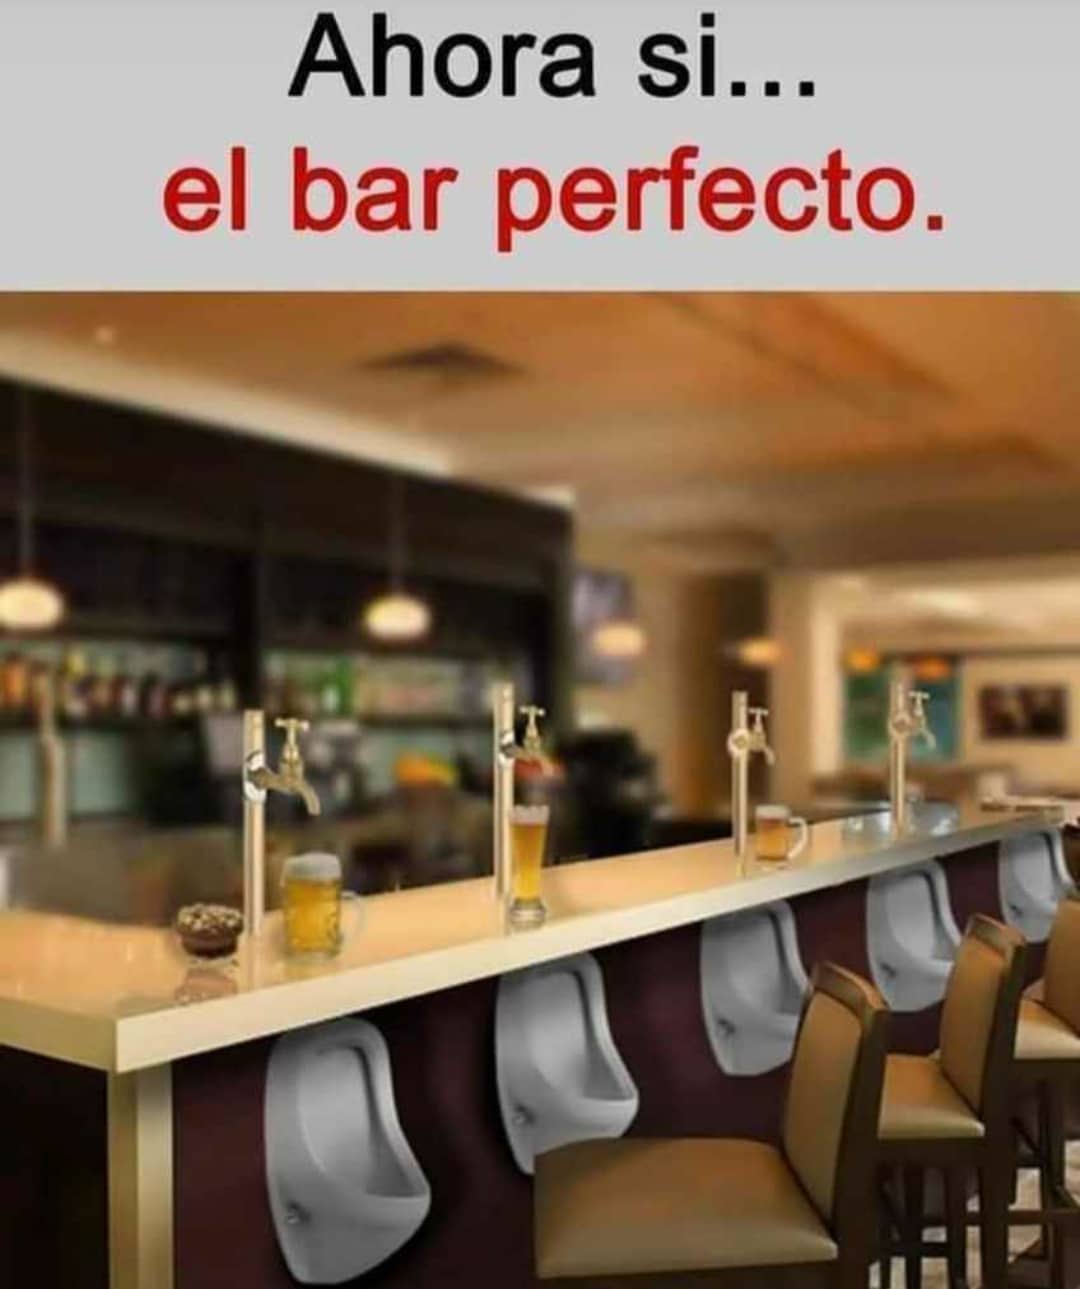 Ahora si... el bar perfecto.